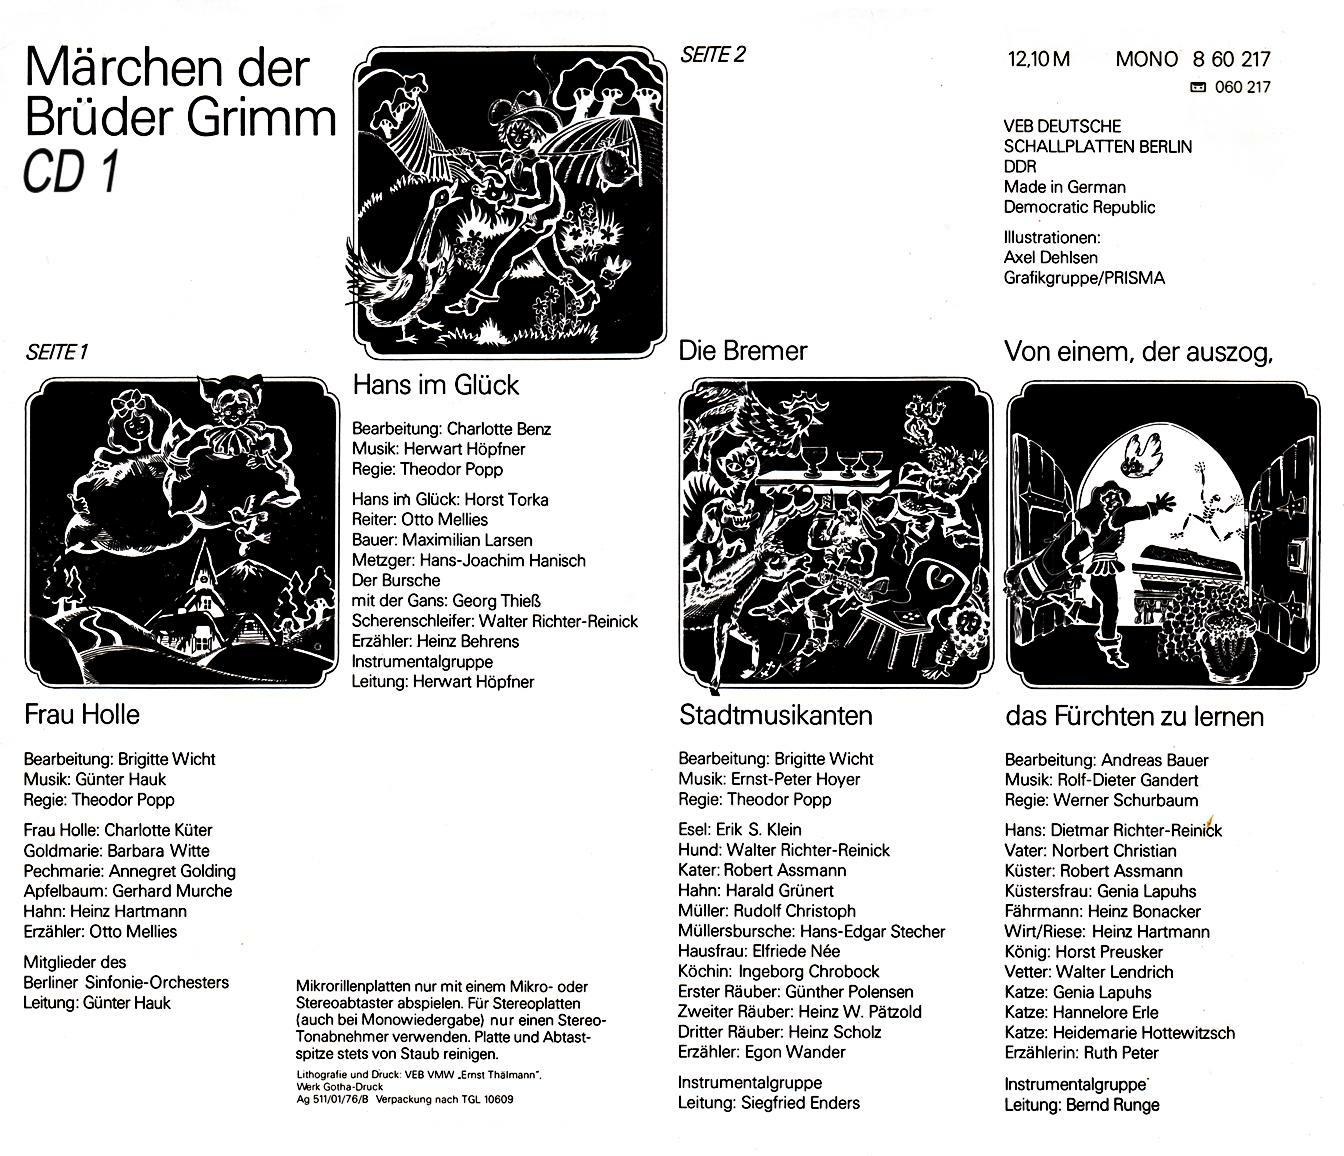 Märchen der Brüder Grimm CD 1